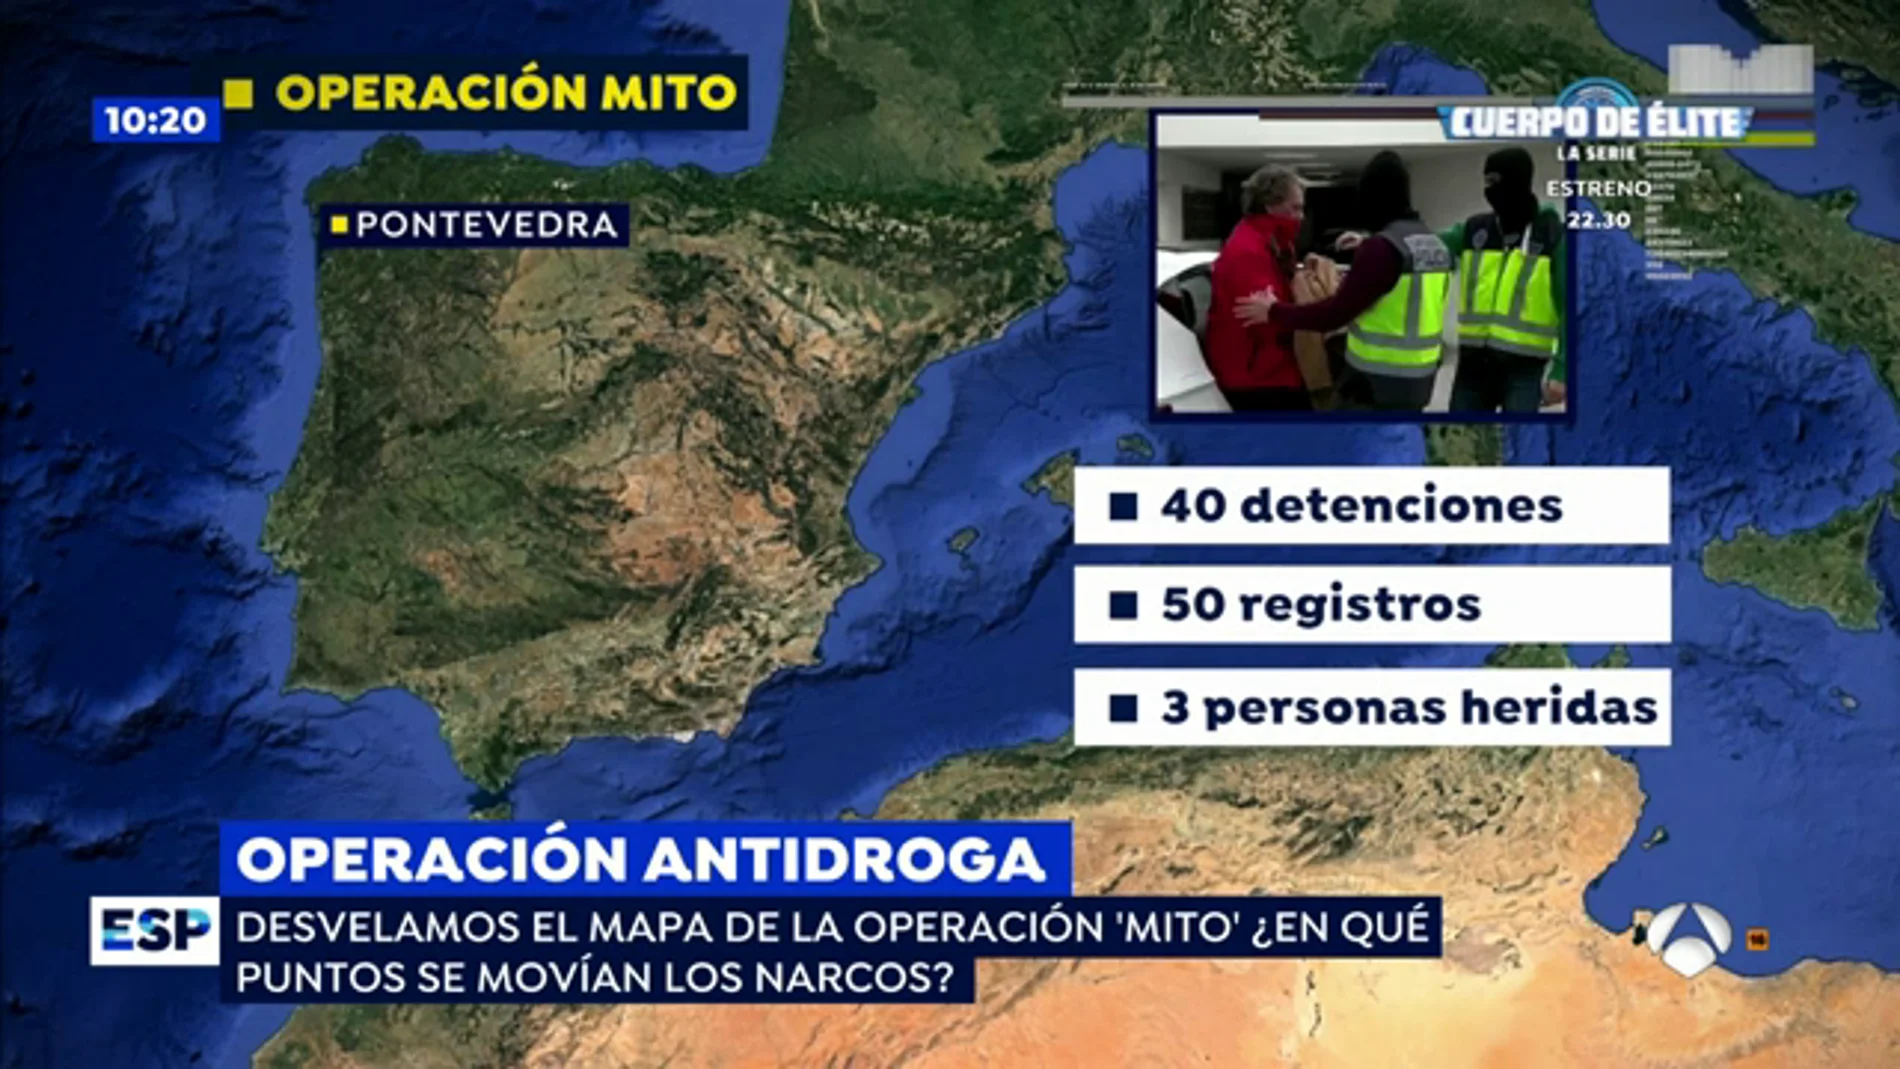 Los detalles de la detención de Sito Miñanco y sus antecedentes